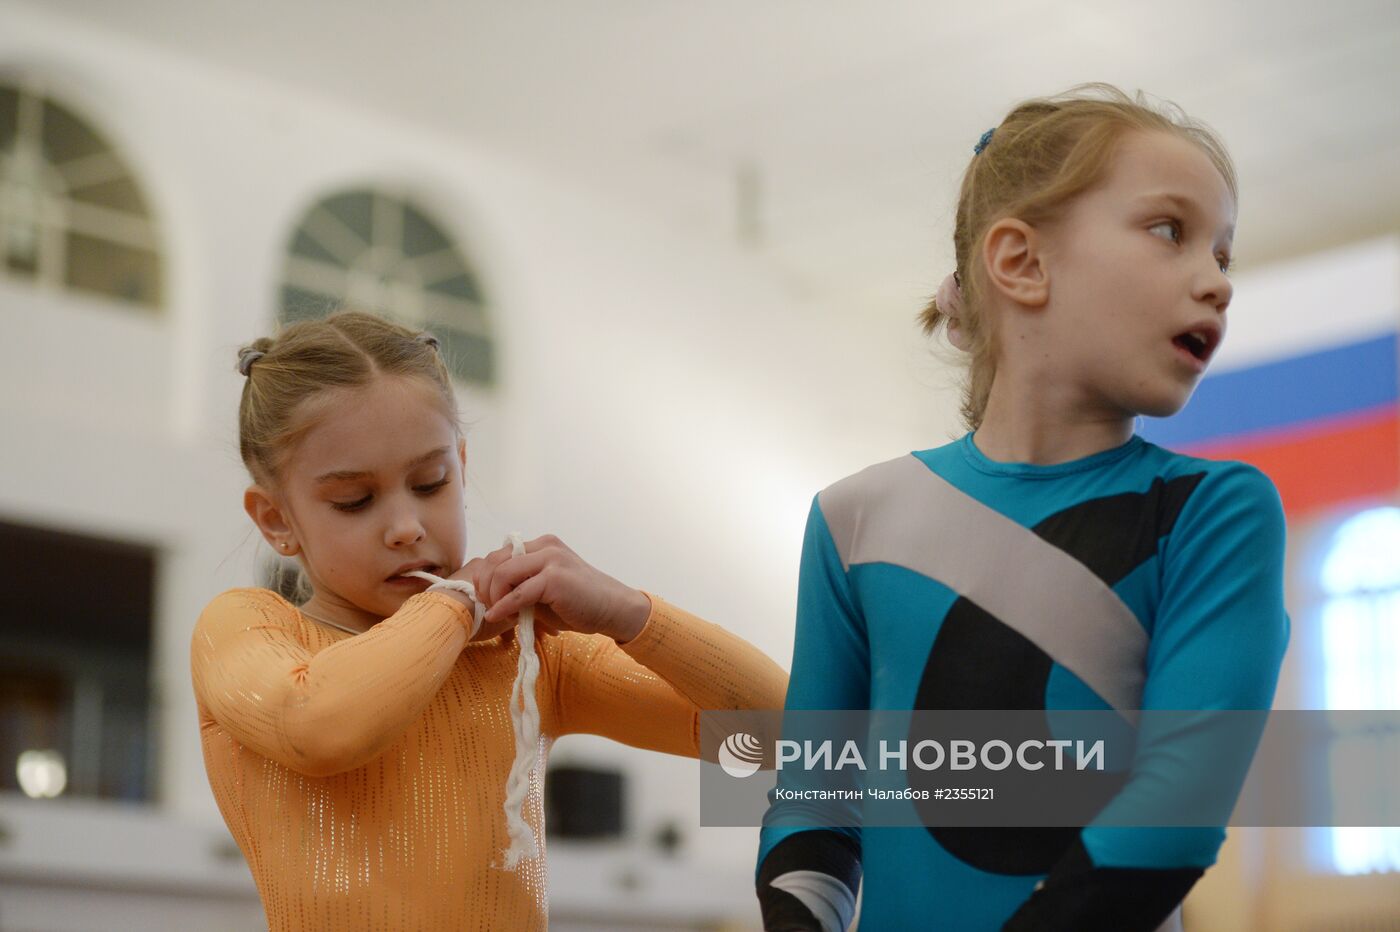 Тренировка по гимнастике в спорткомплексе "Манеж" в Великом Новгороде